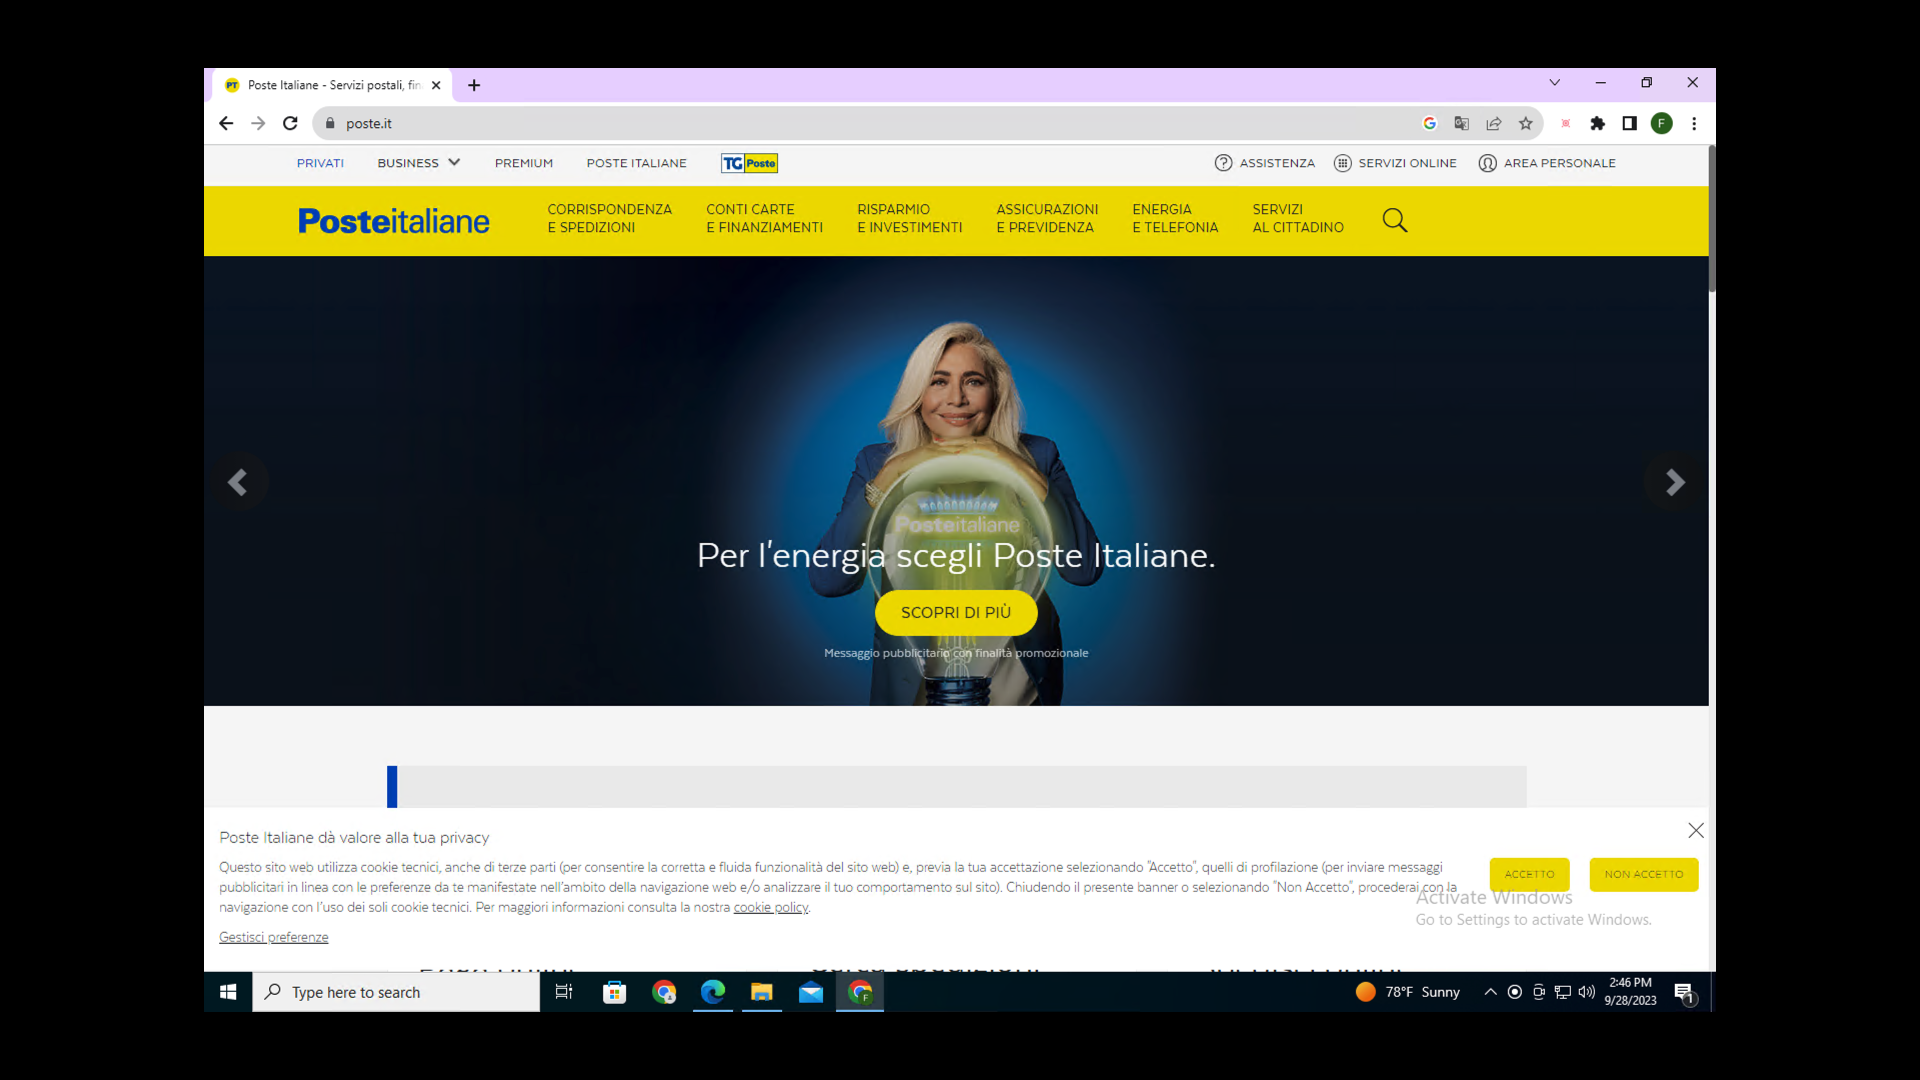 画像 5 は、イタリア郵政公社の正規 Web サイト Posteitaliane のページのスクリーンショットです。電球の上に腕を置いている金髪の女性の画像があります。Web サイトの言語はイタリア語です。